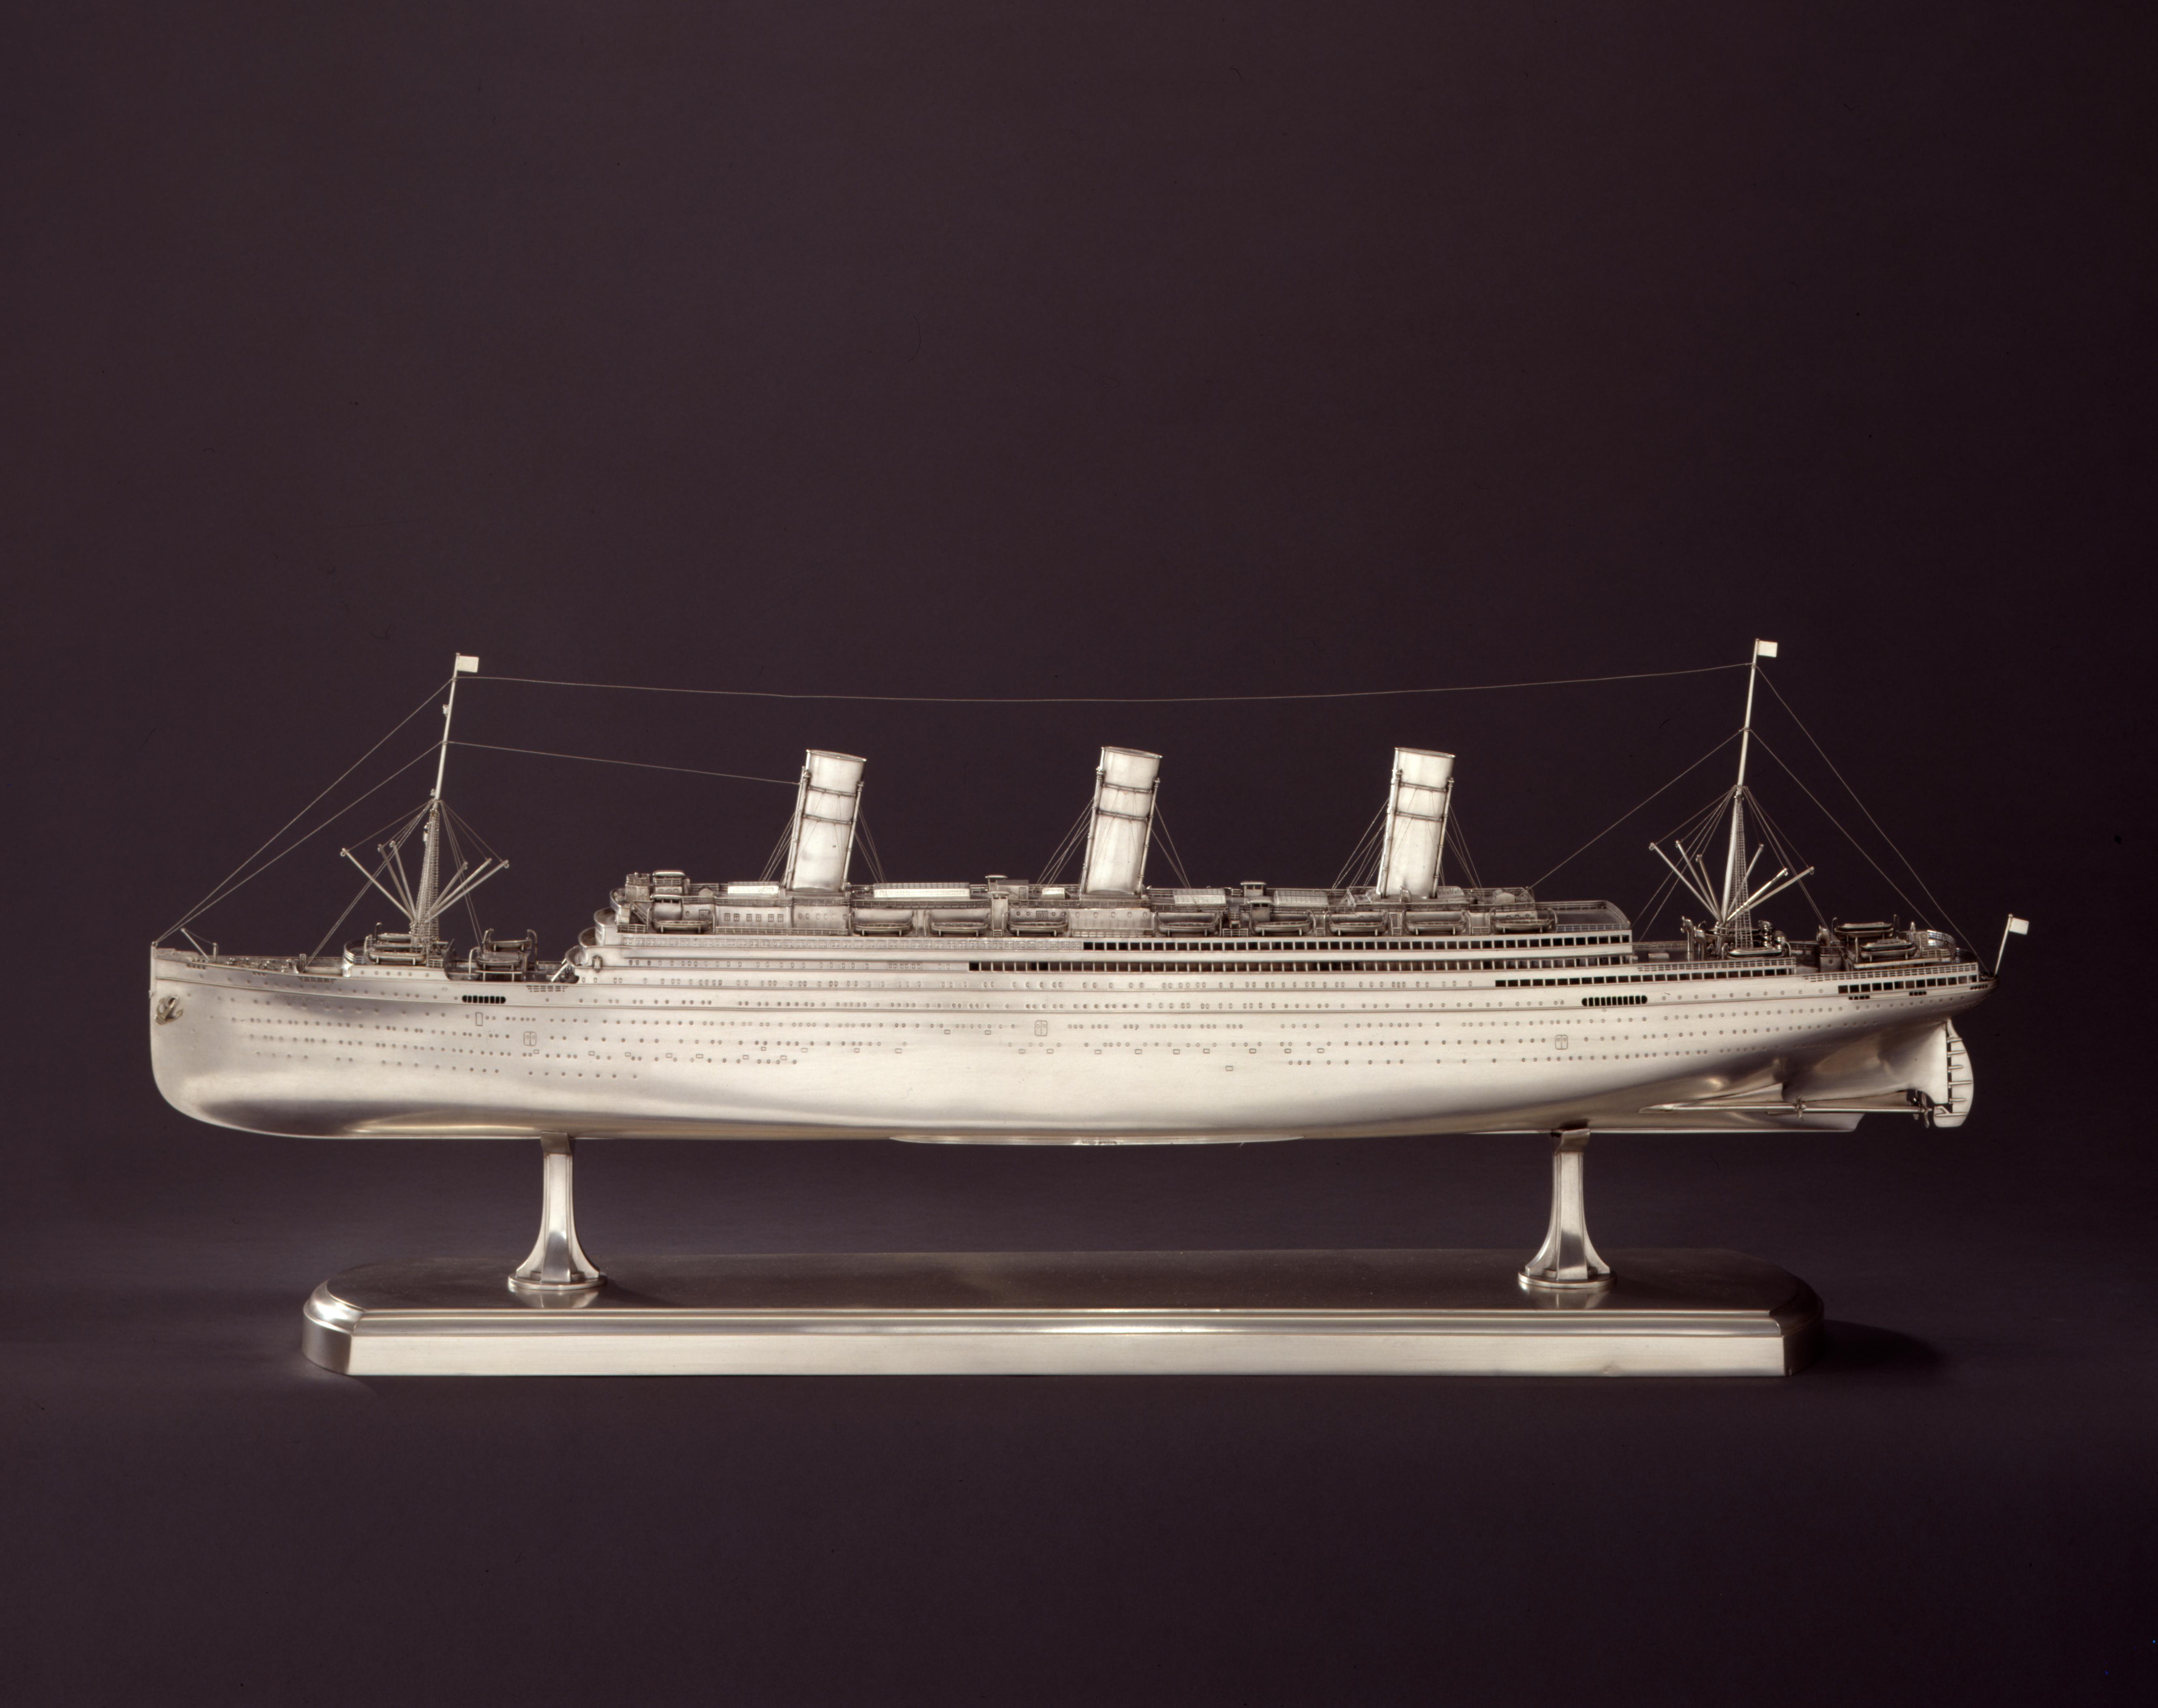 Modell: Schnelldampfer "Imperator", 1912